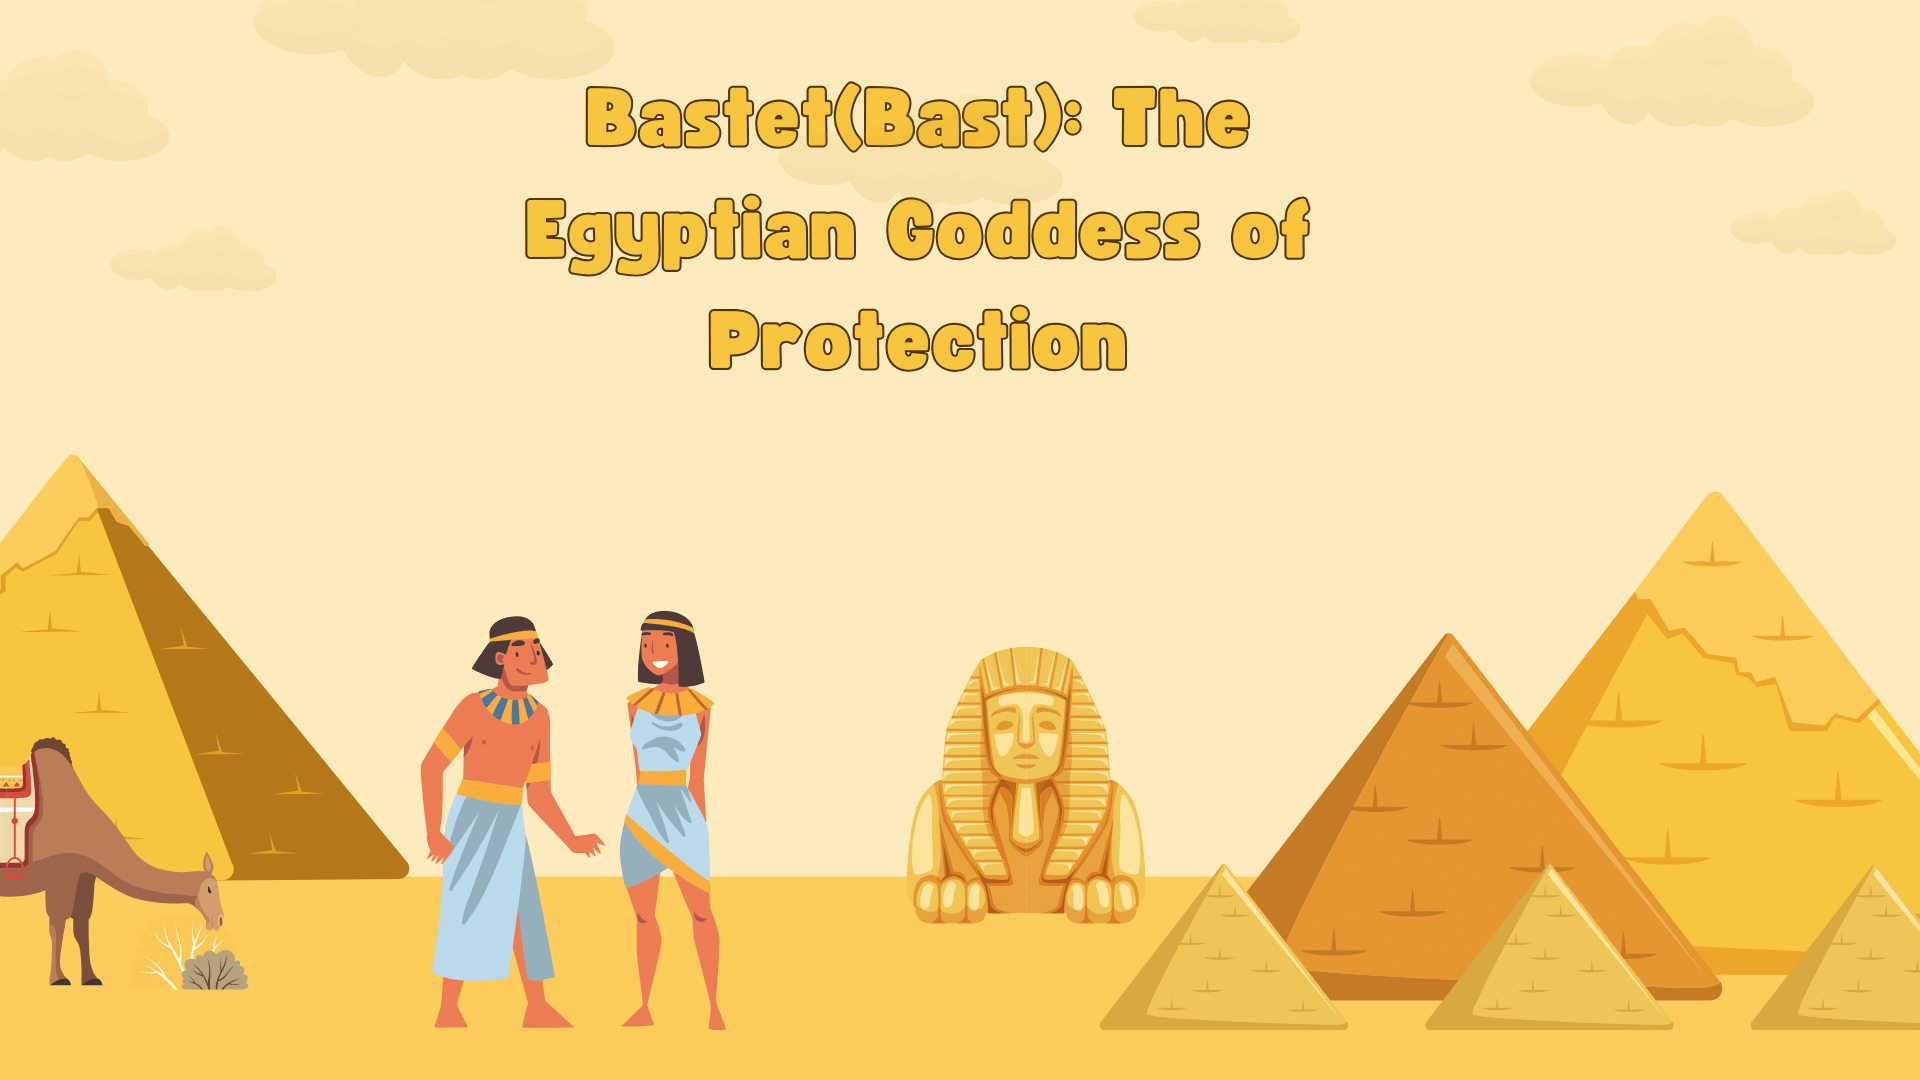 Bastet(Bast): The Egyptian Goddess of Protection